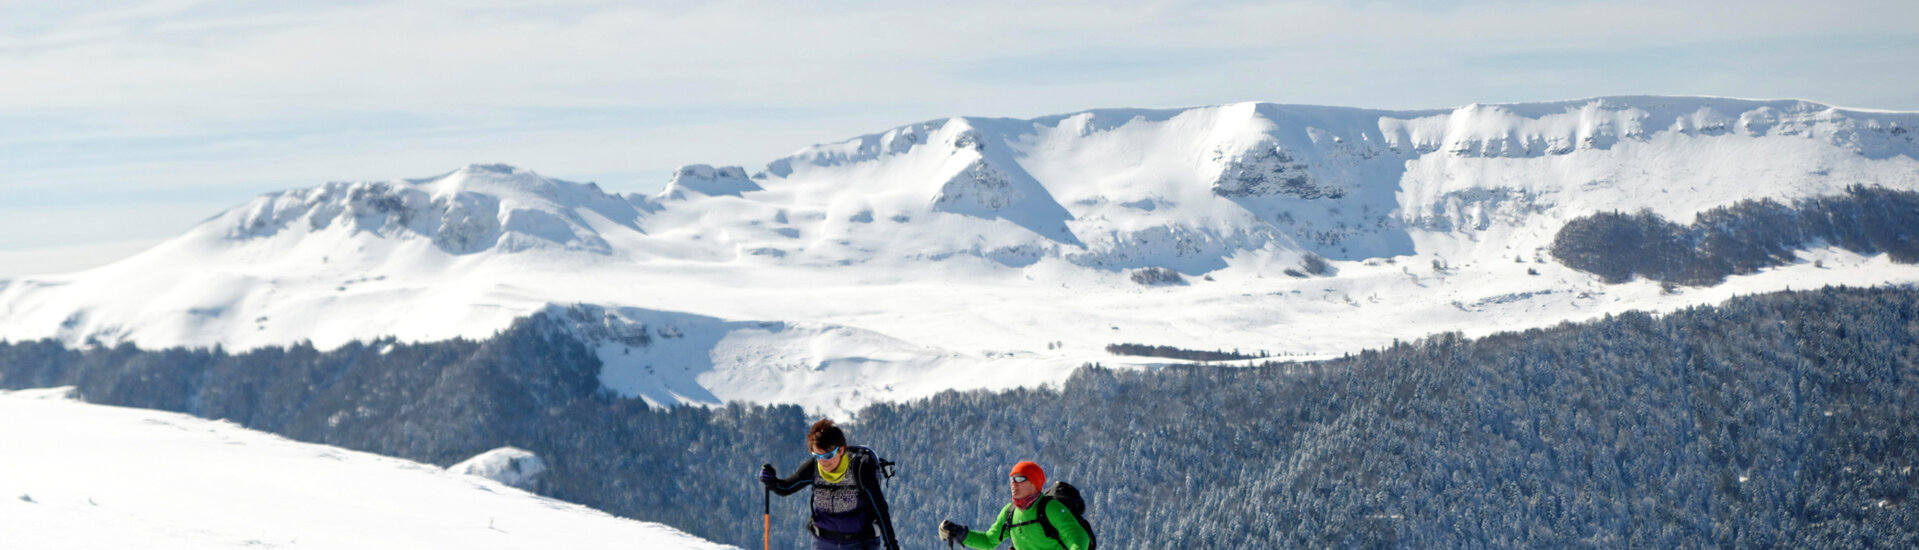 Ski de rando nordique ou Back country